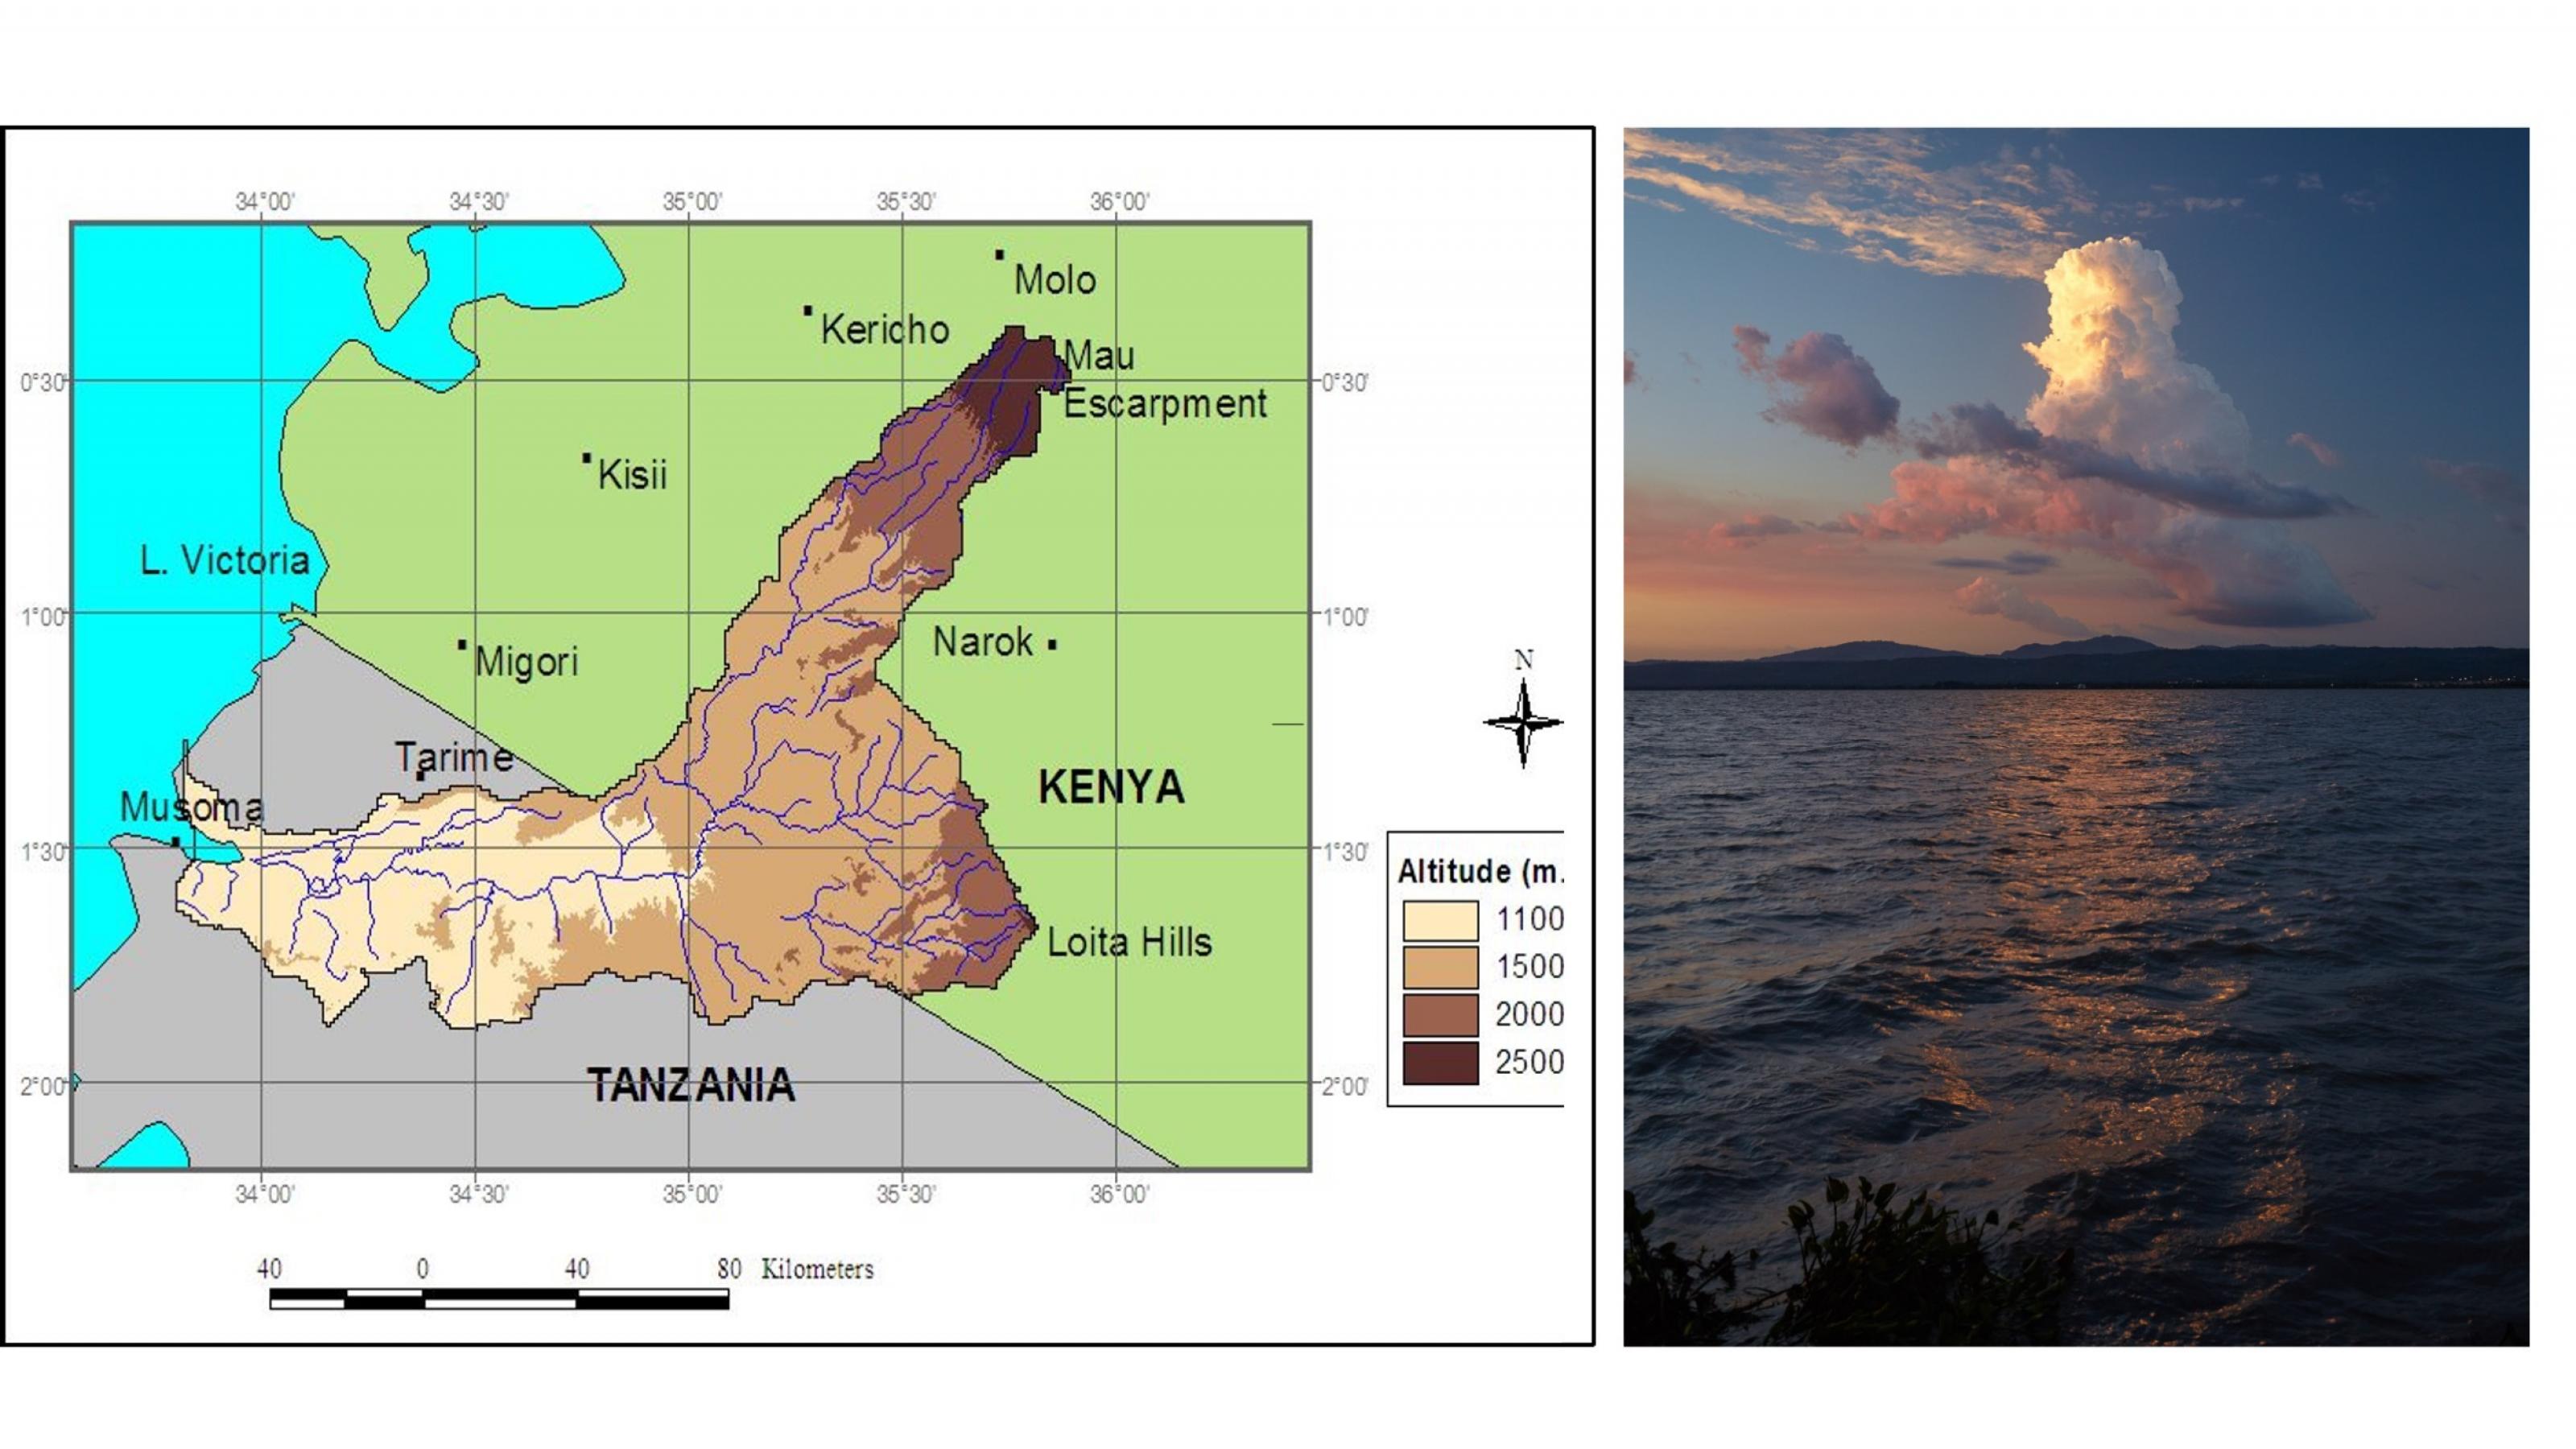 Links ist eine Karte zu sehen, mit Kenia imNorden und Tansania im Süden, dem Victoria-See im Westen. Die unterschiedlichen Höhen sind farblich wiedergegeben, mit dem Mau-Wald als höchstem Bereich in über 2500 Metern Höhe. Im Zentrum ist das verzweigte Mau-Mara-Flusssystem gut zu erkenne.